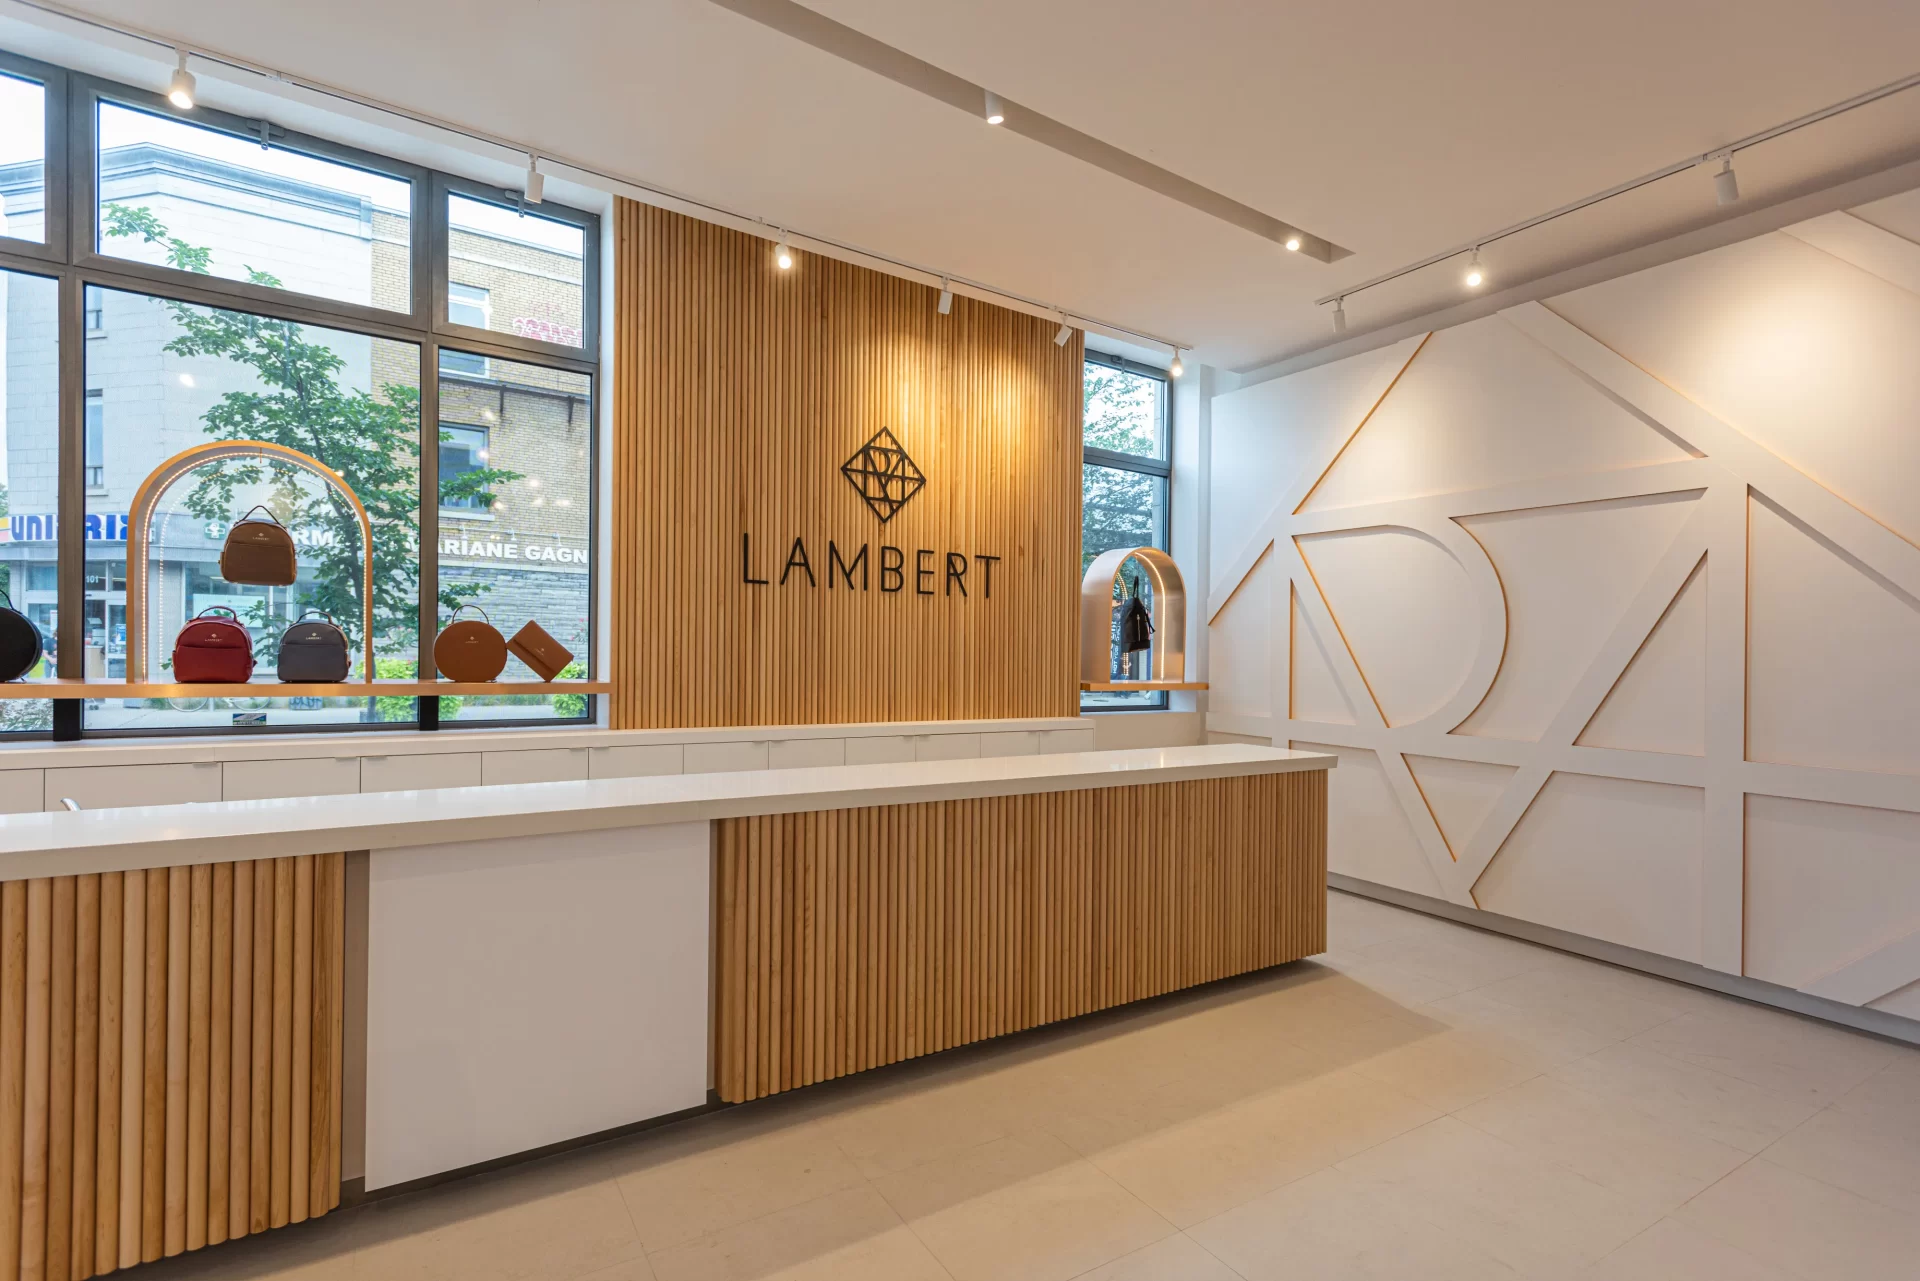 [FR] Boutique Lambert / [EN] Boutique Lambert